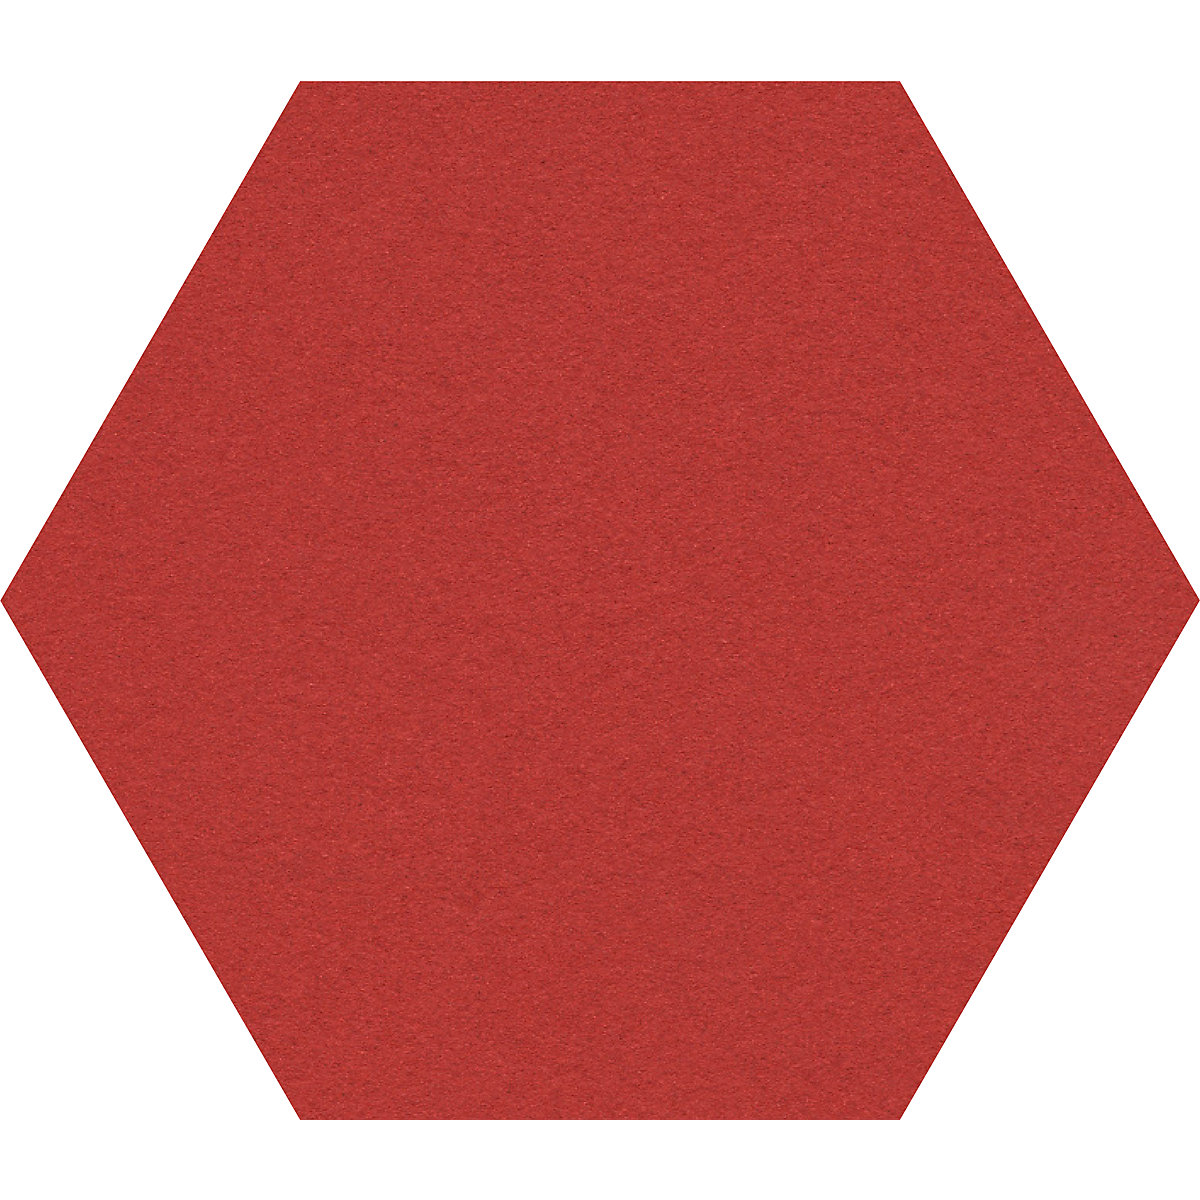 Tableau à épingles design hexagonal – Chameleon, liège, l x h 600 x 600 mm, rouge-24